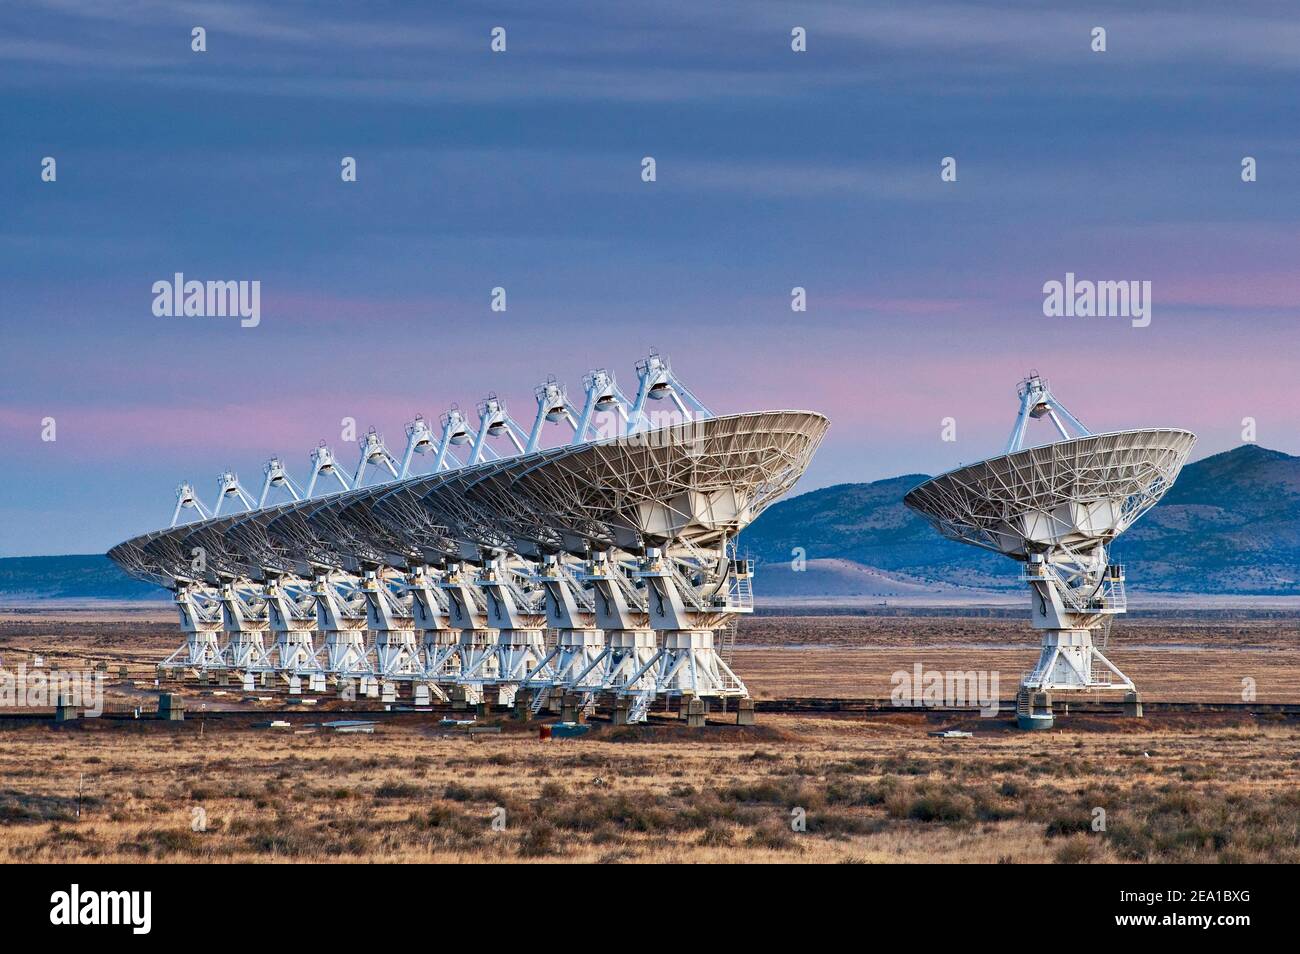 Antennen des Very Large Array Radio Telescope (VLA), einem Radioastronomik-Observatorium in der Plains of San Agustin, in der Nähe von Datil, New Mexico, USA Stockfoto